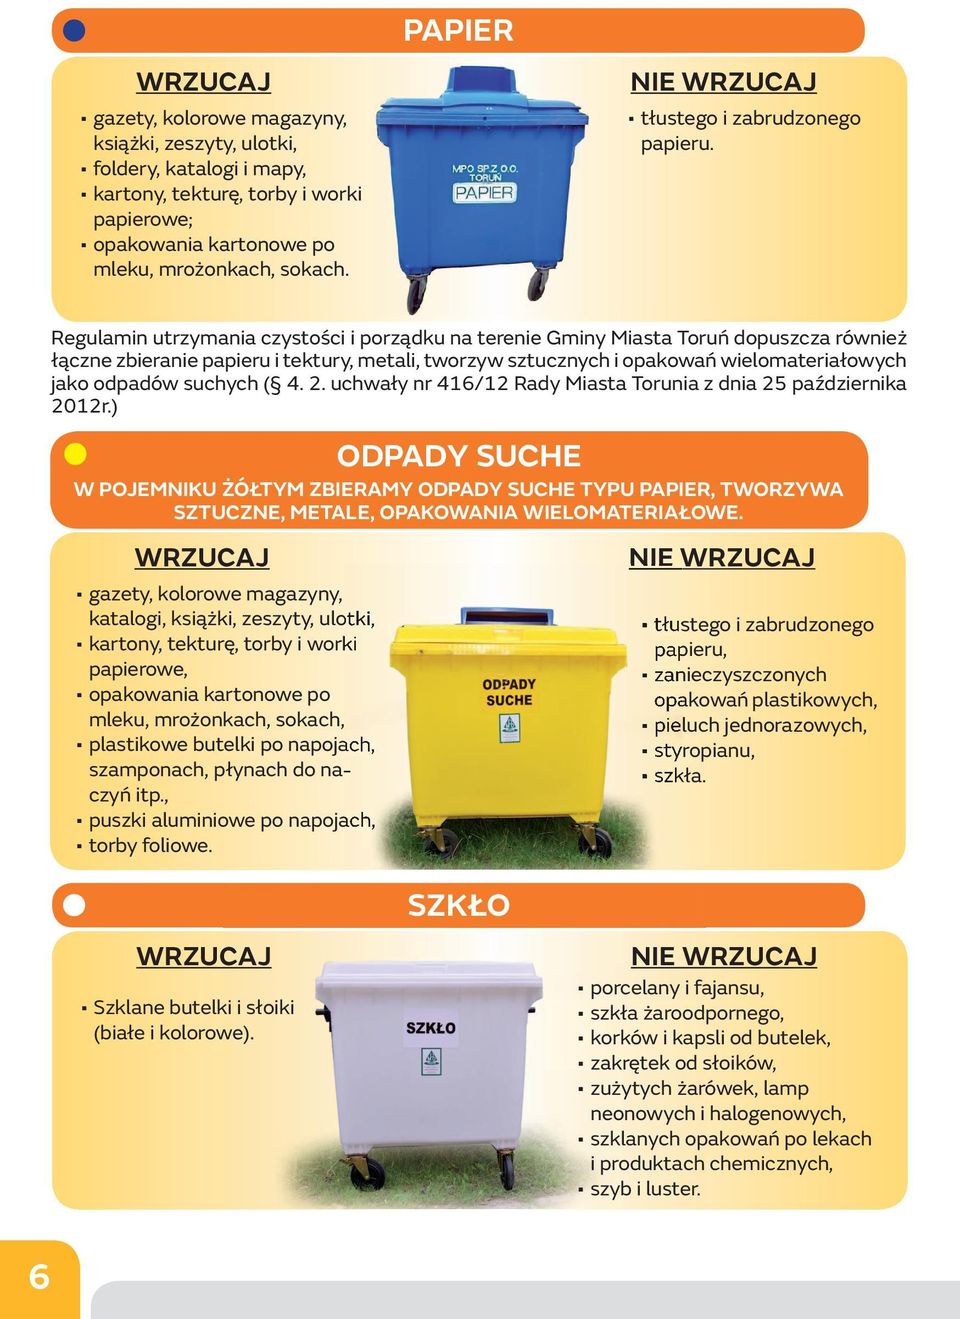 Regulamin utrzymania czystości i porządku na terenie Gminy Miasta Toruń dopuszcza również łączne zbieranie papieru i tektury, metali, tworzyw sztucznych i opakowań wielomateriałowych jako odpadów